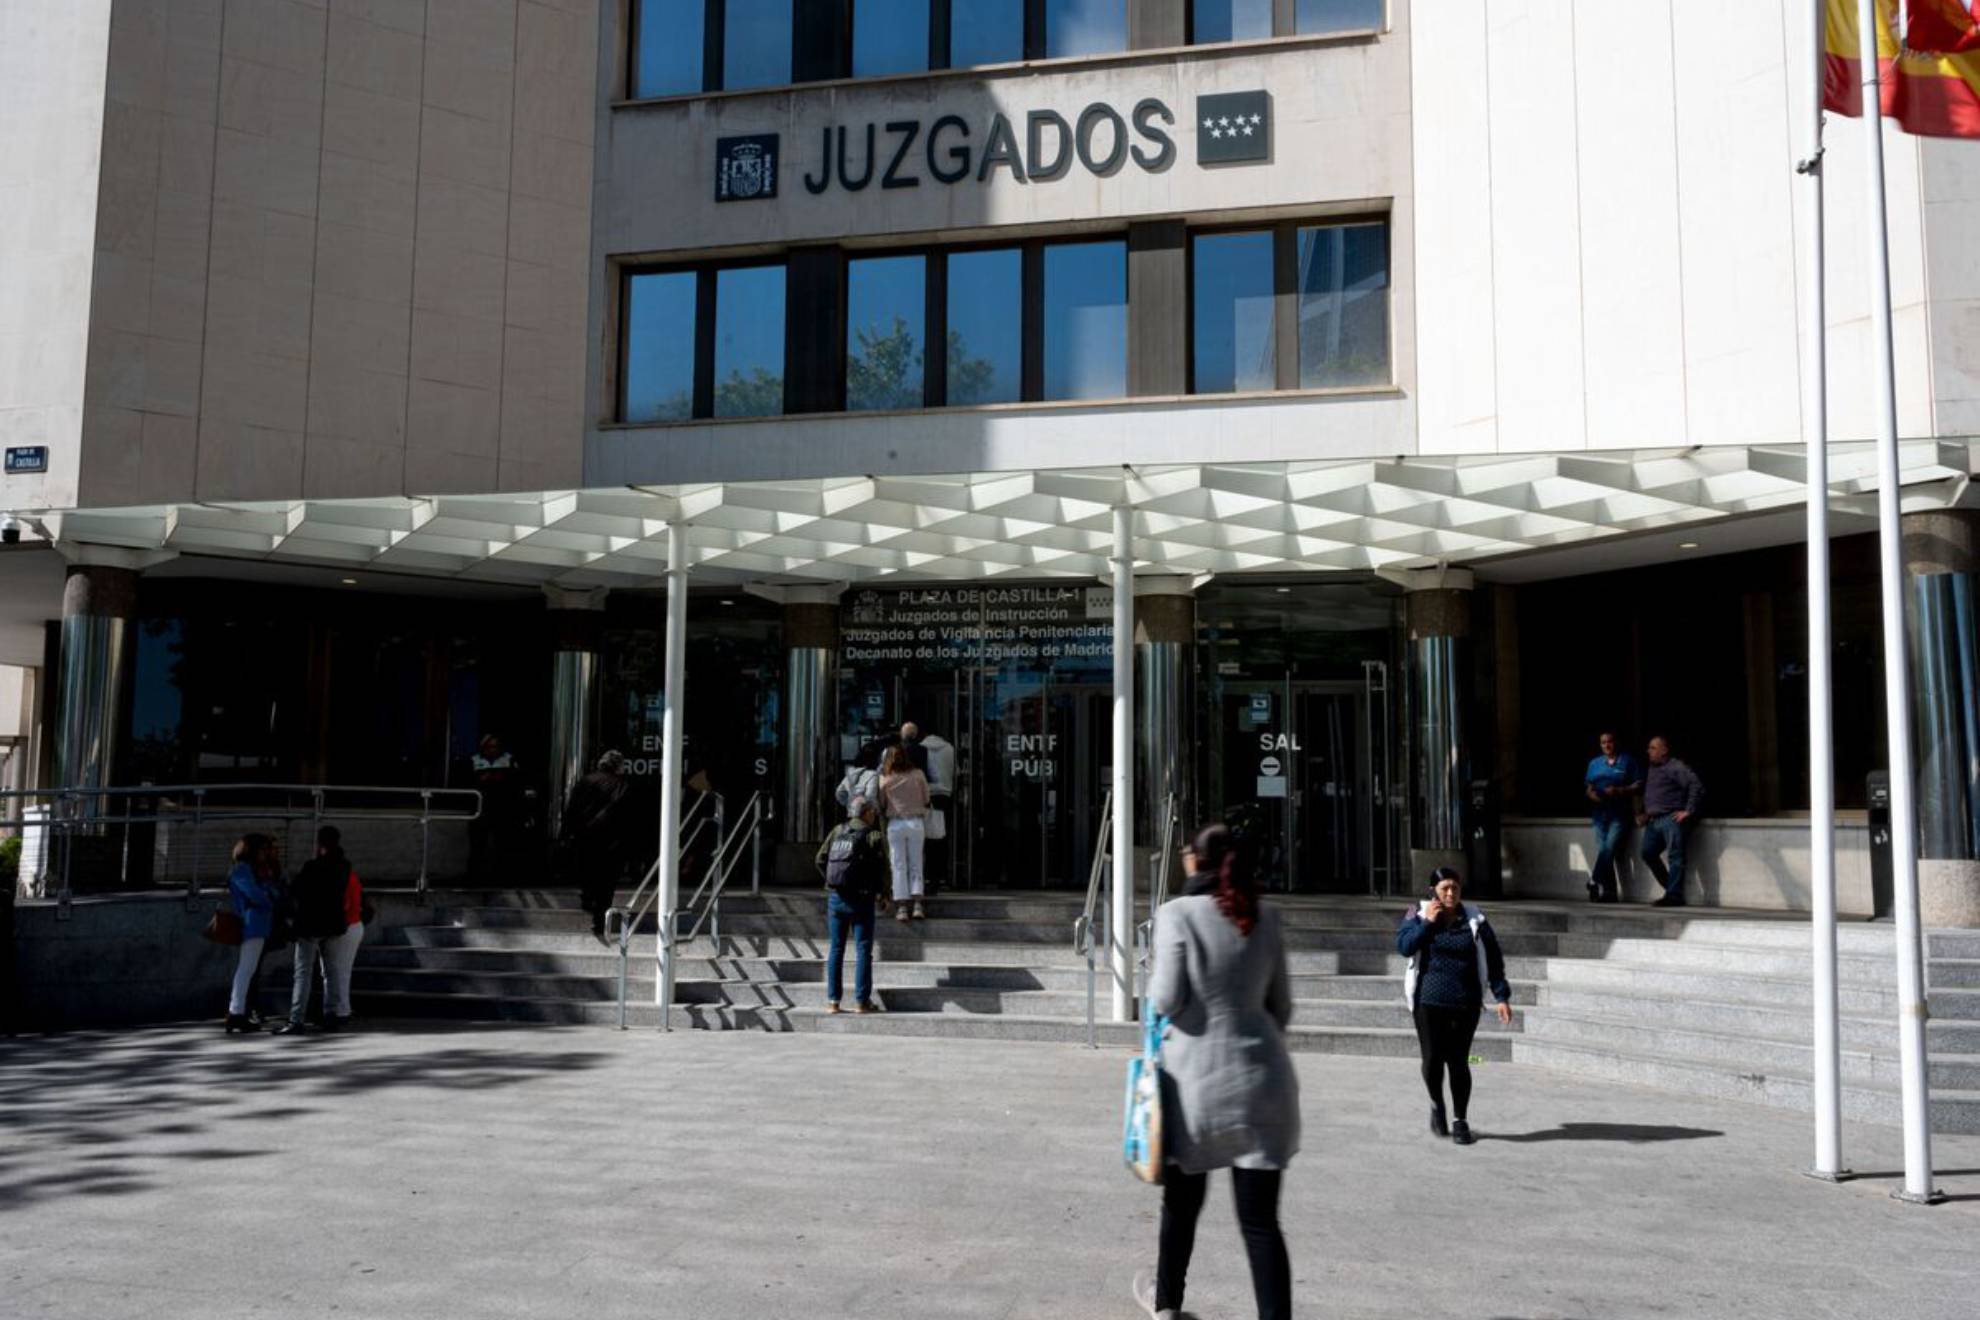 Juzgados Plaza Castilla.